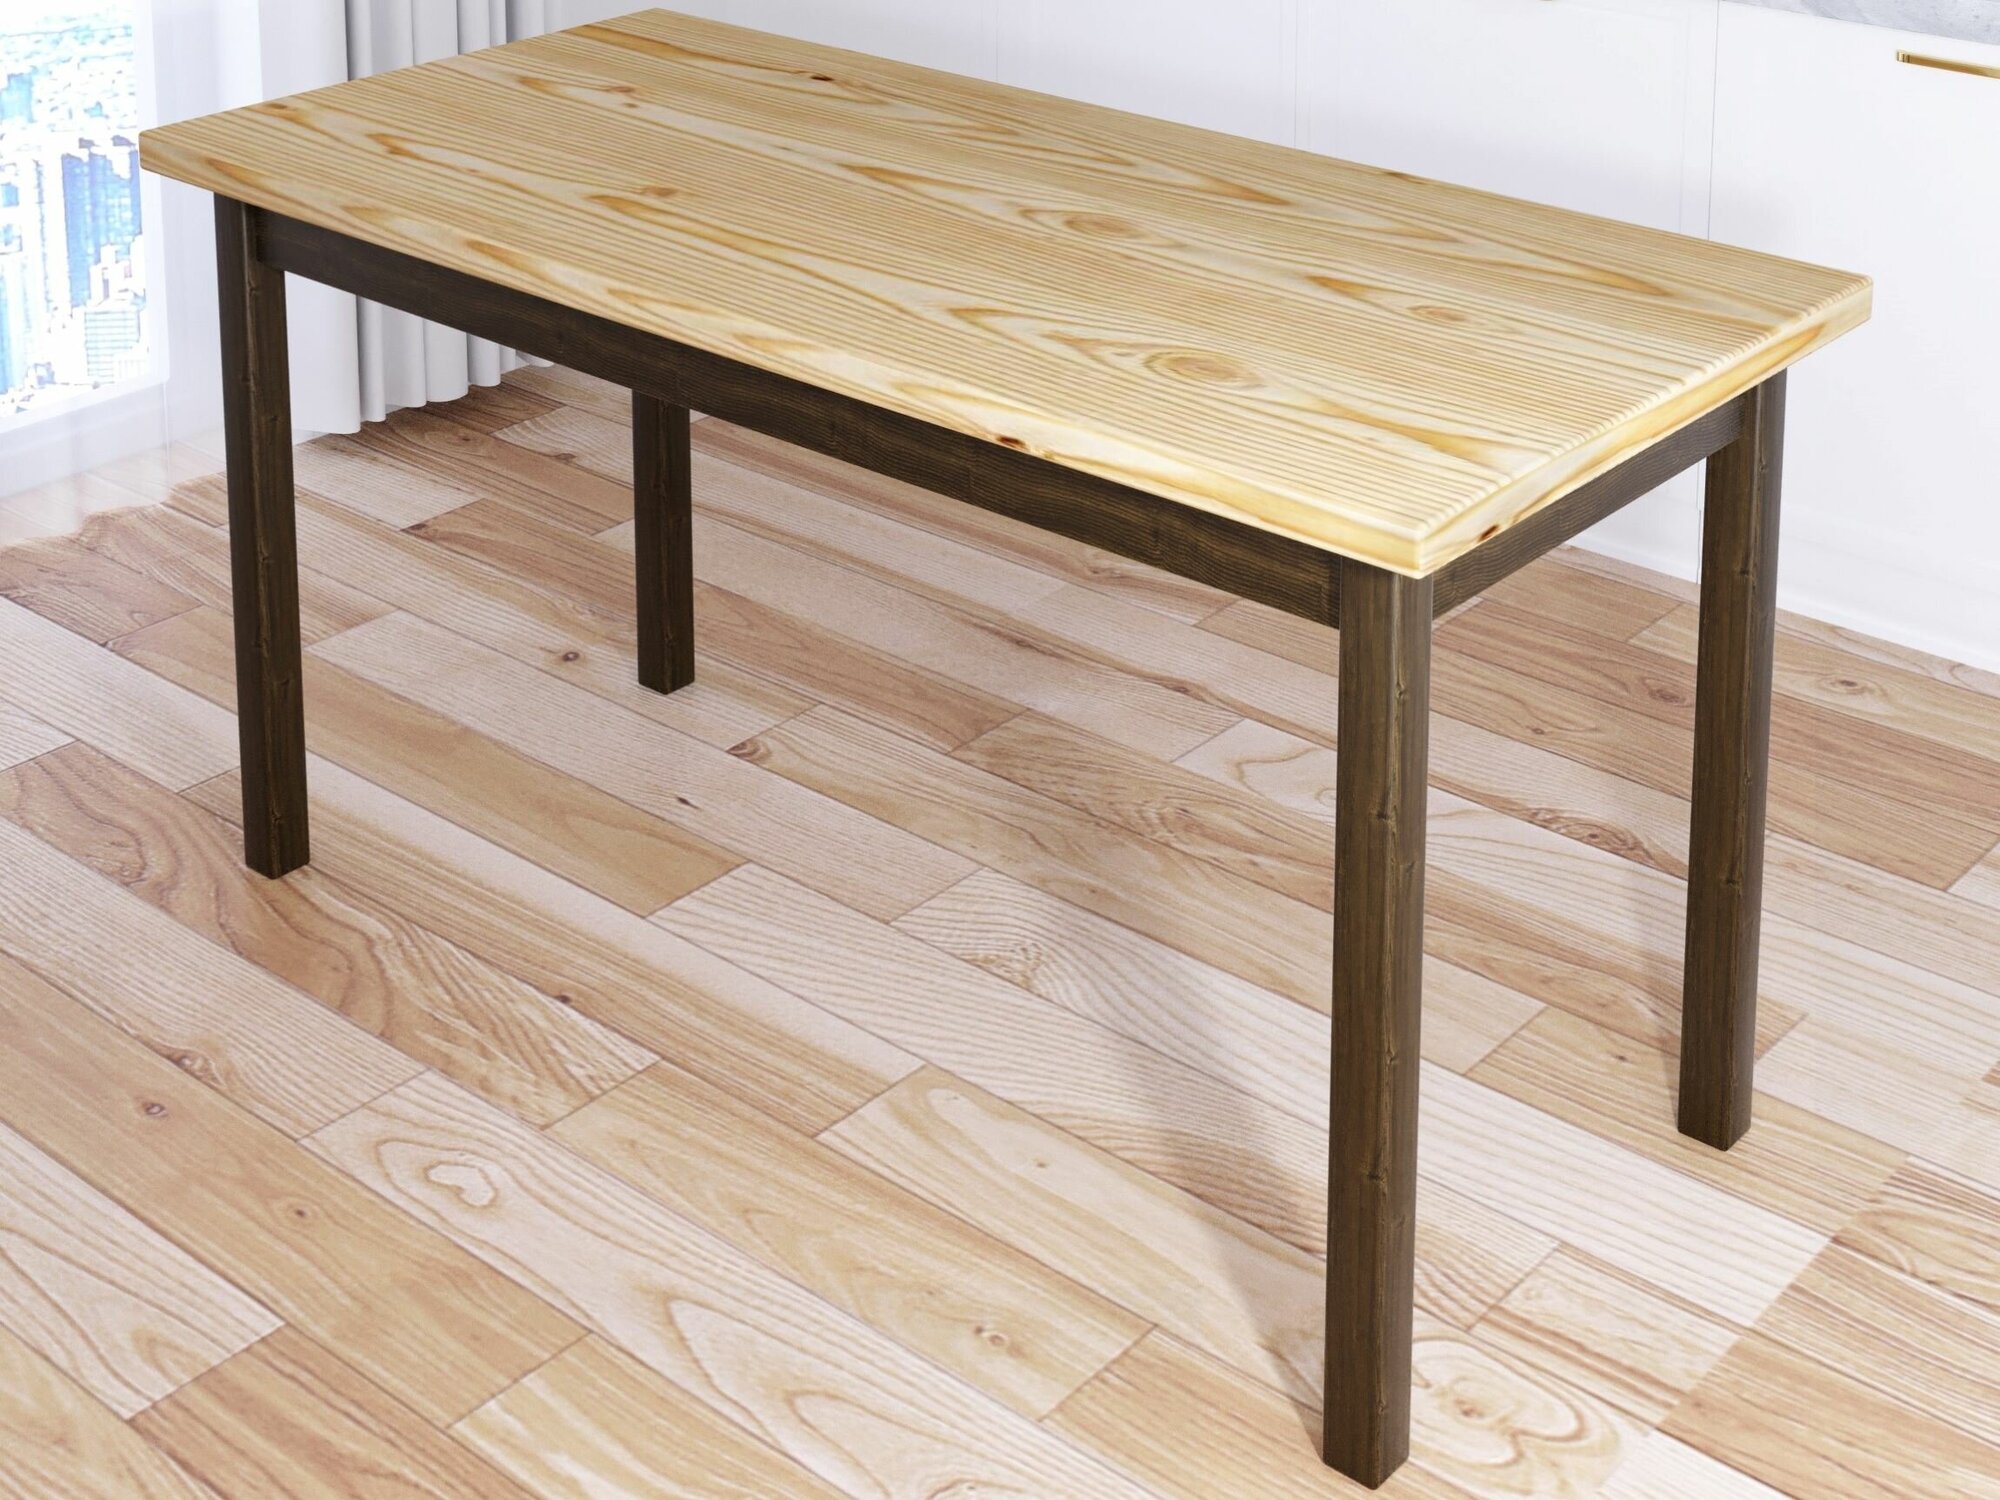 Стол кухонный Классика из массива сосны, лакированная столешница 40 мм и ножки цвета темного дуба, 140х70х75 см